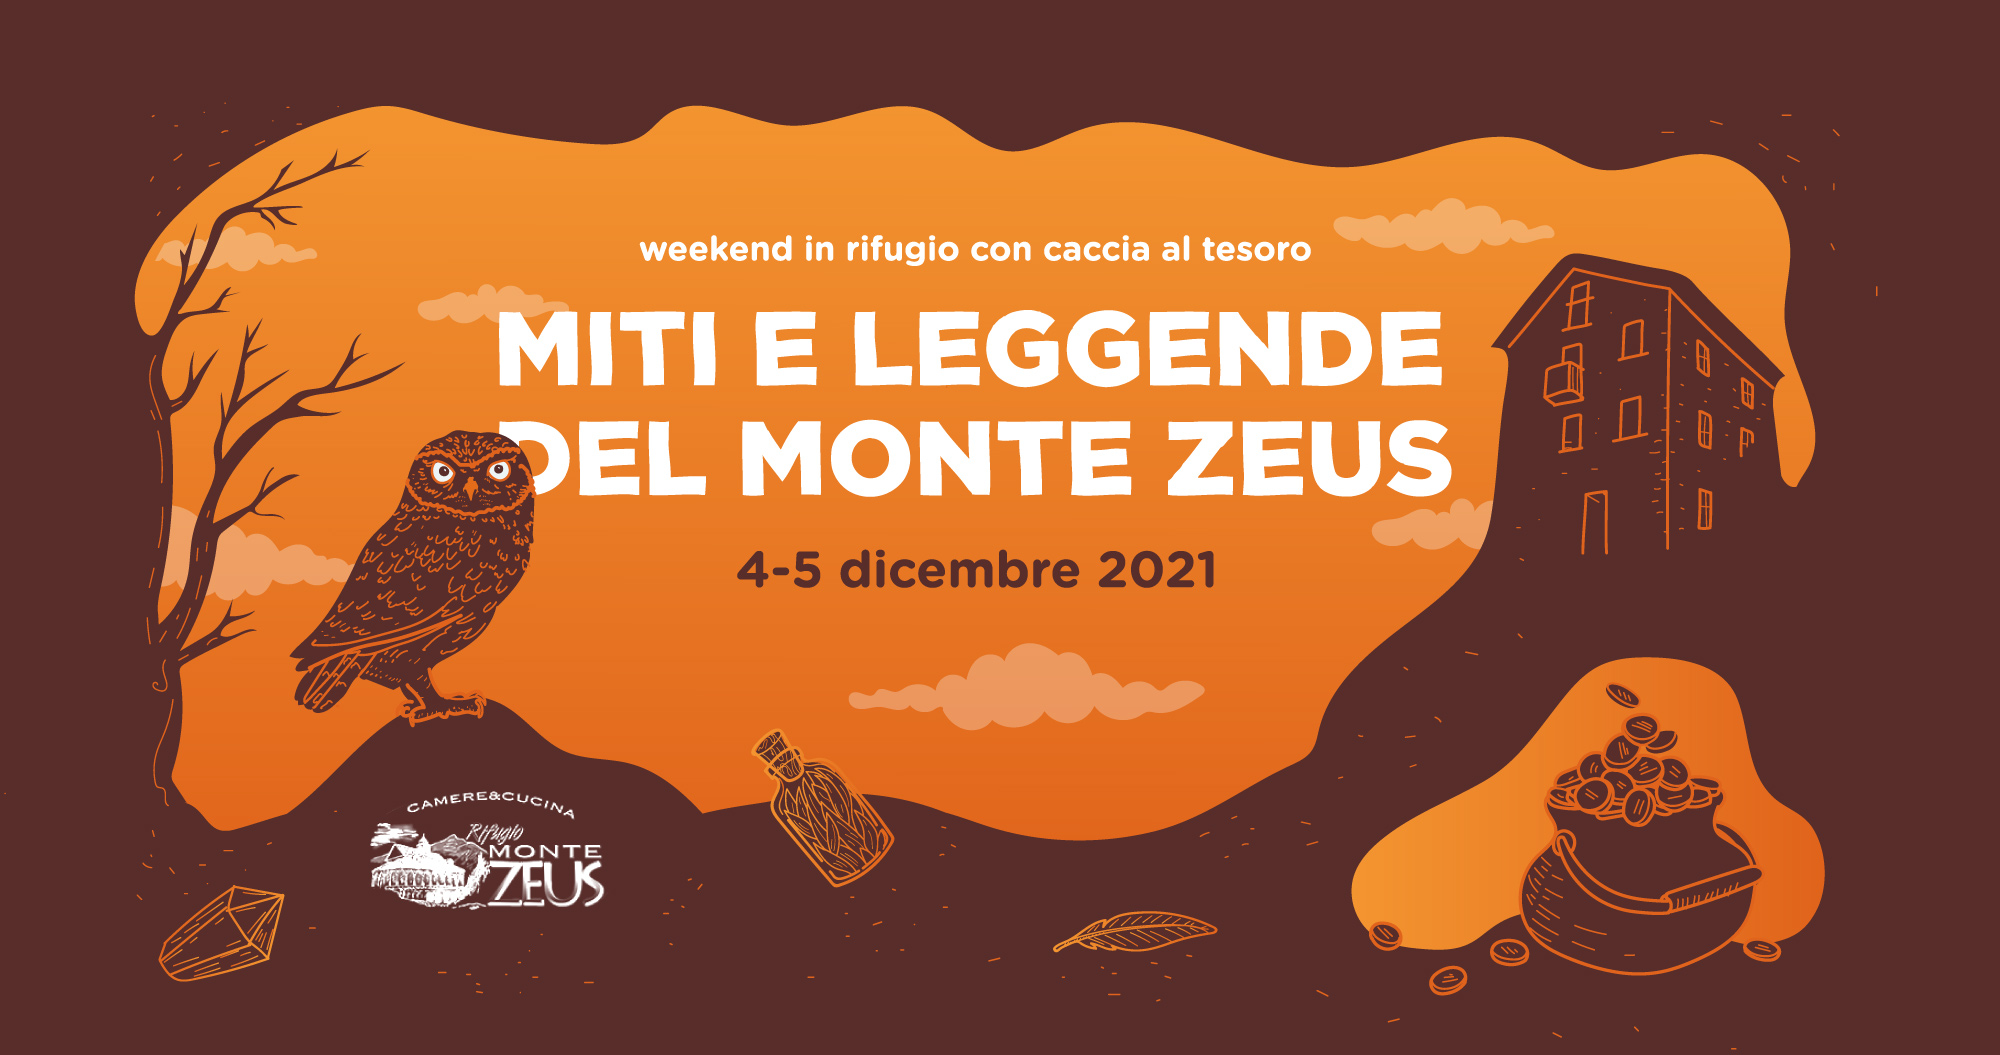 Miti e leggende del Monte Zeus - Weekend con caccia al tesoro